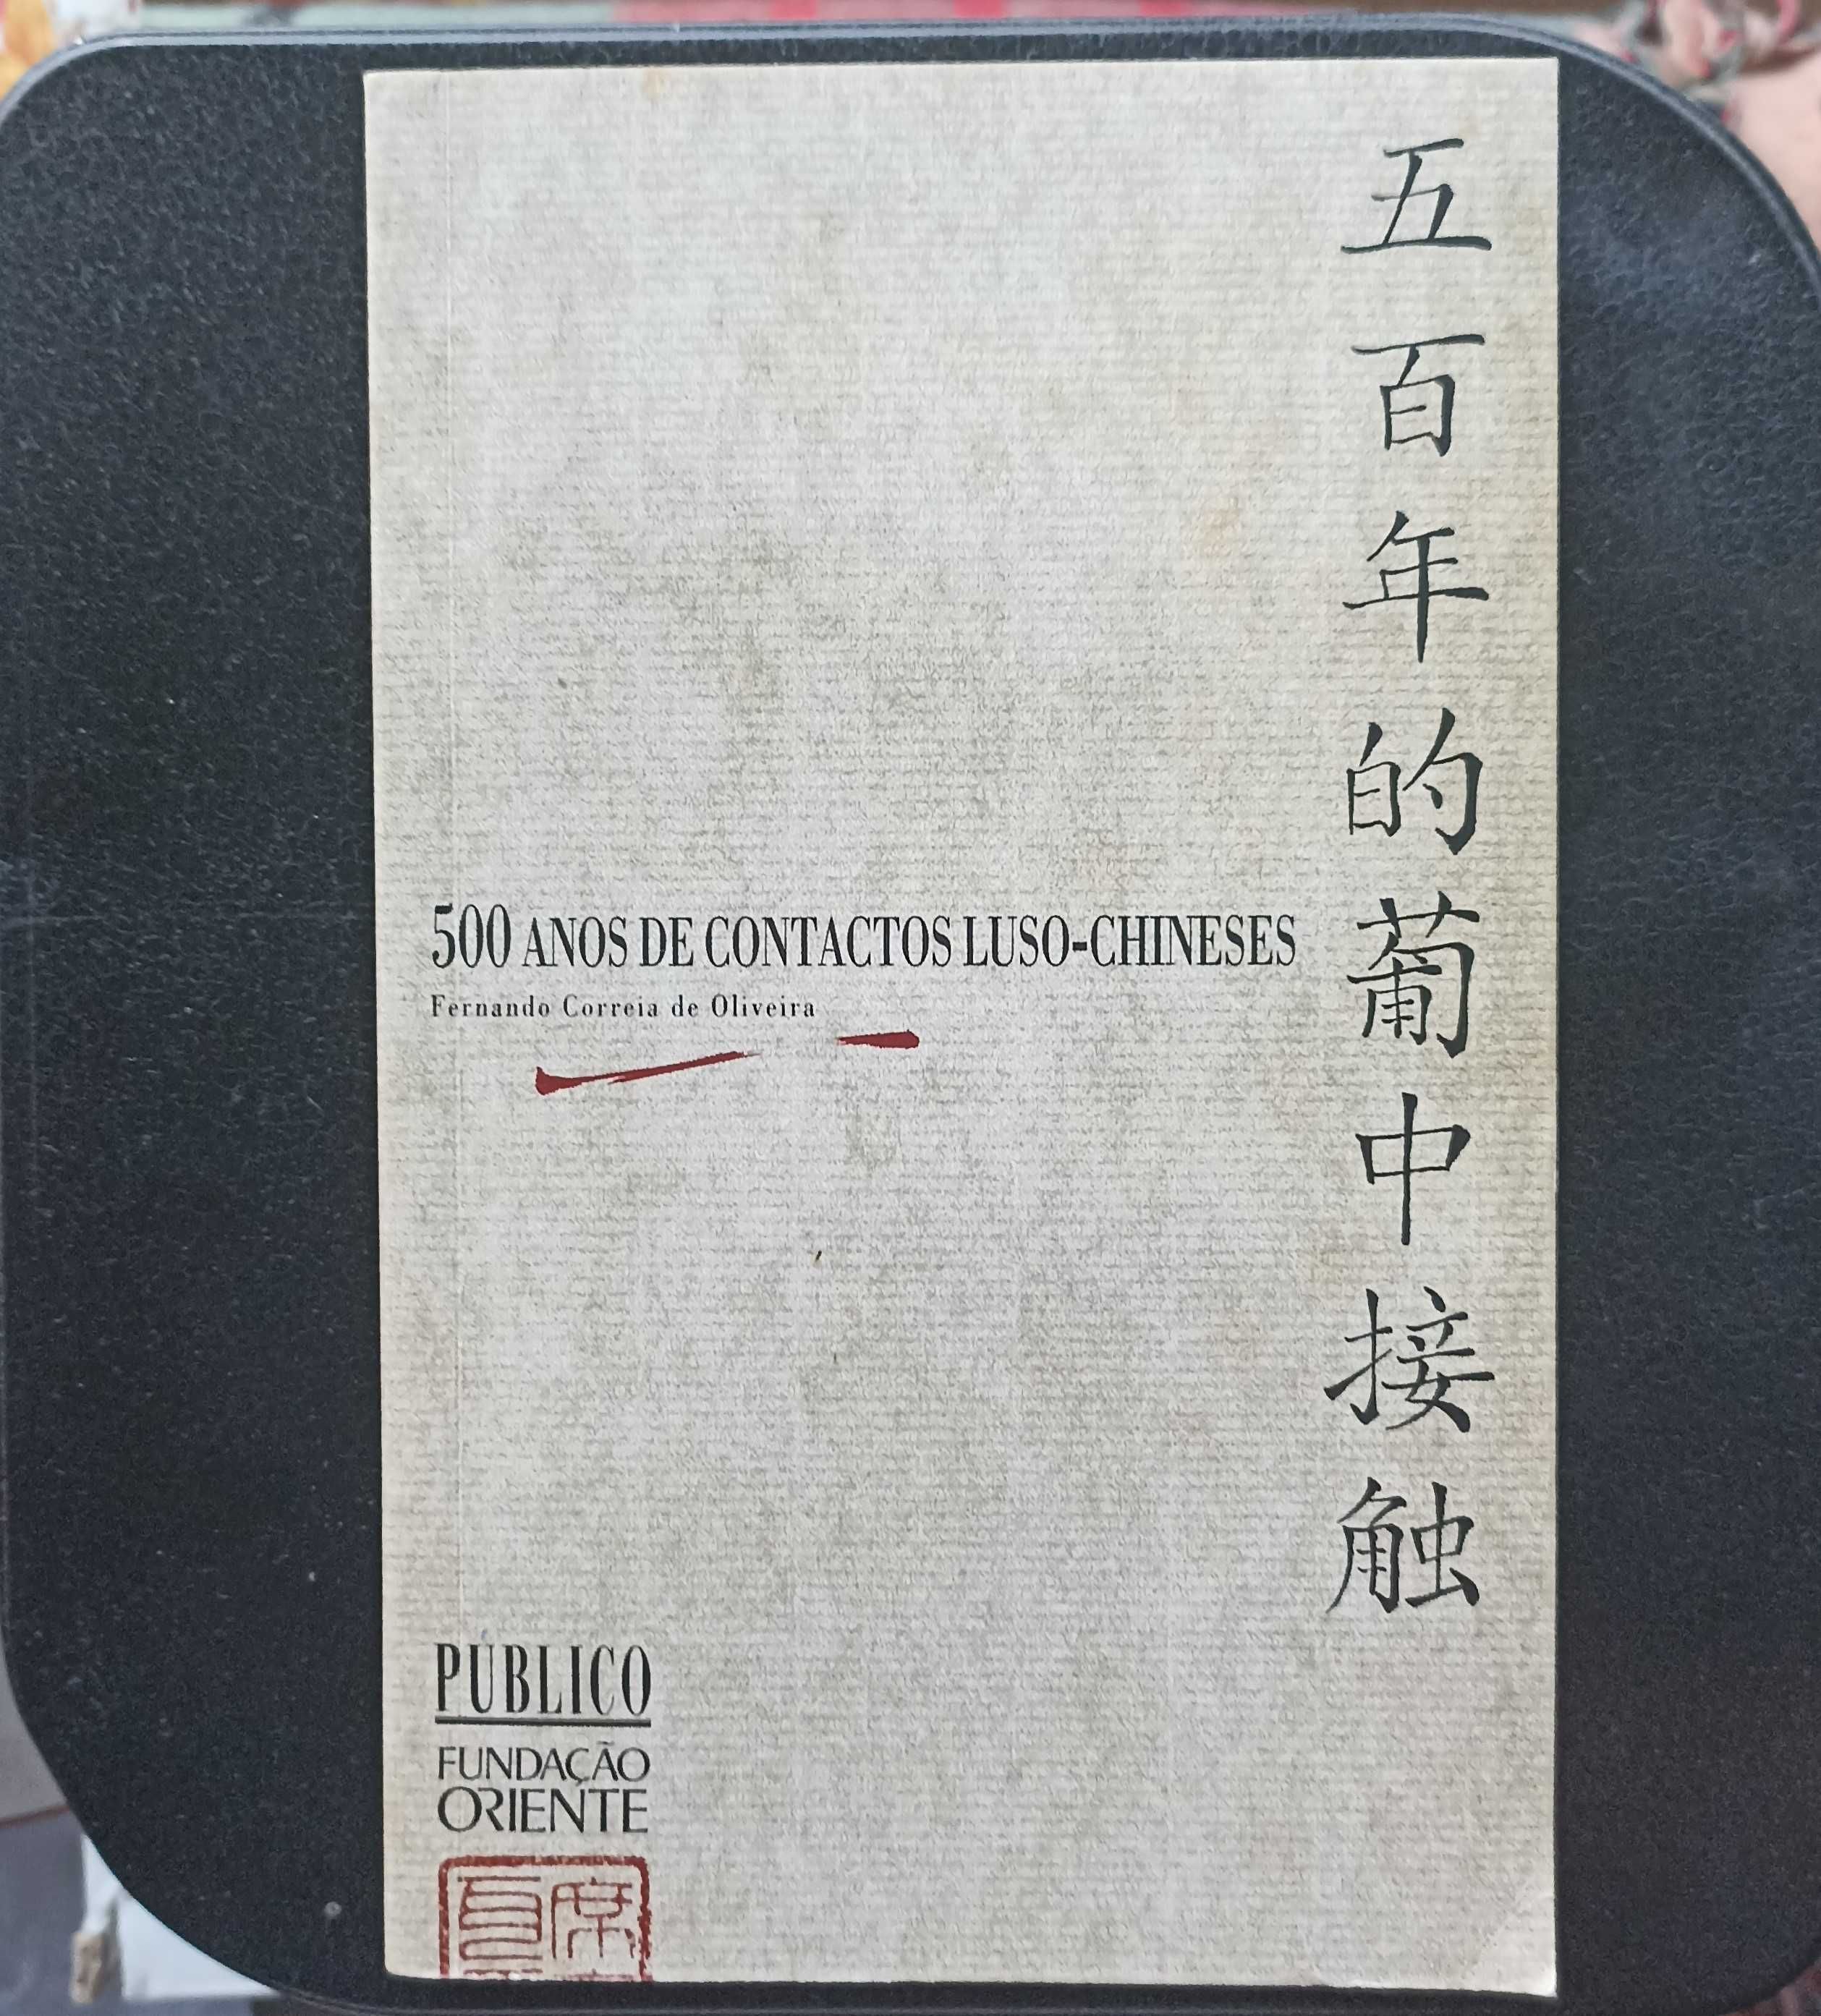 Livro "500 anos de Contactos Luso-Chineses" de Fernando de Oliveira